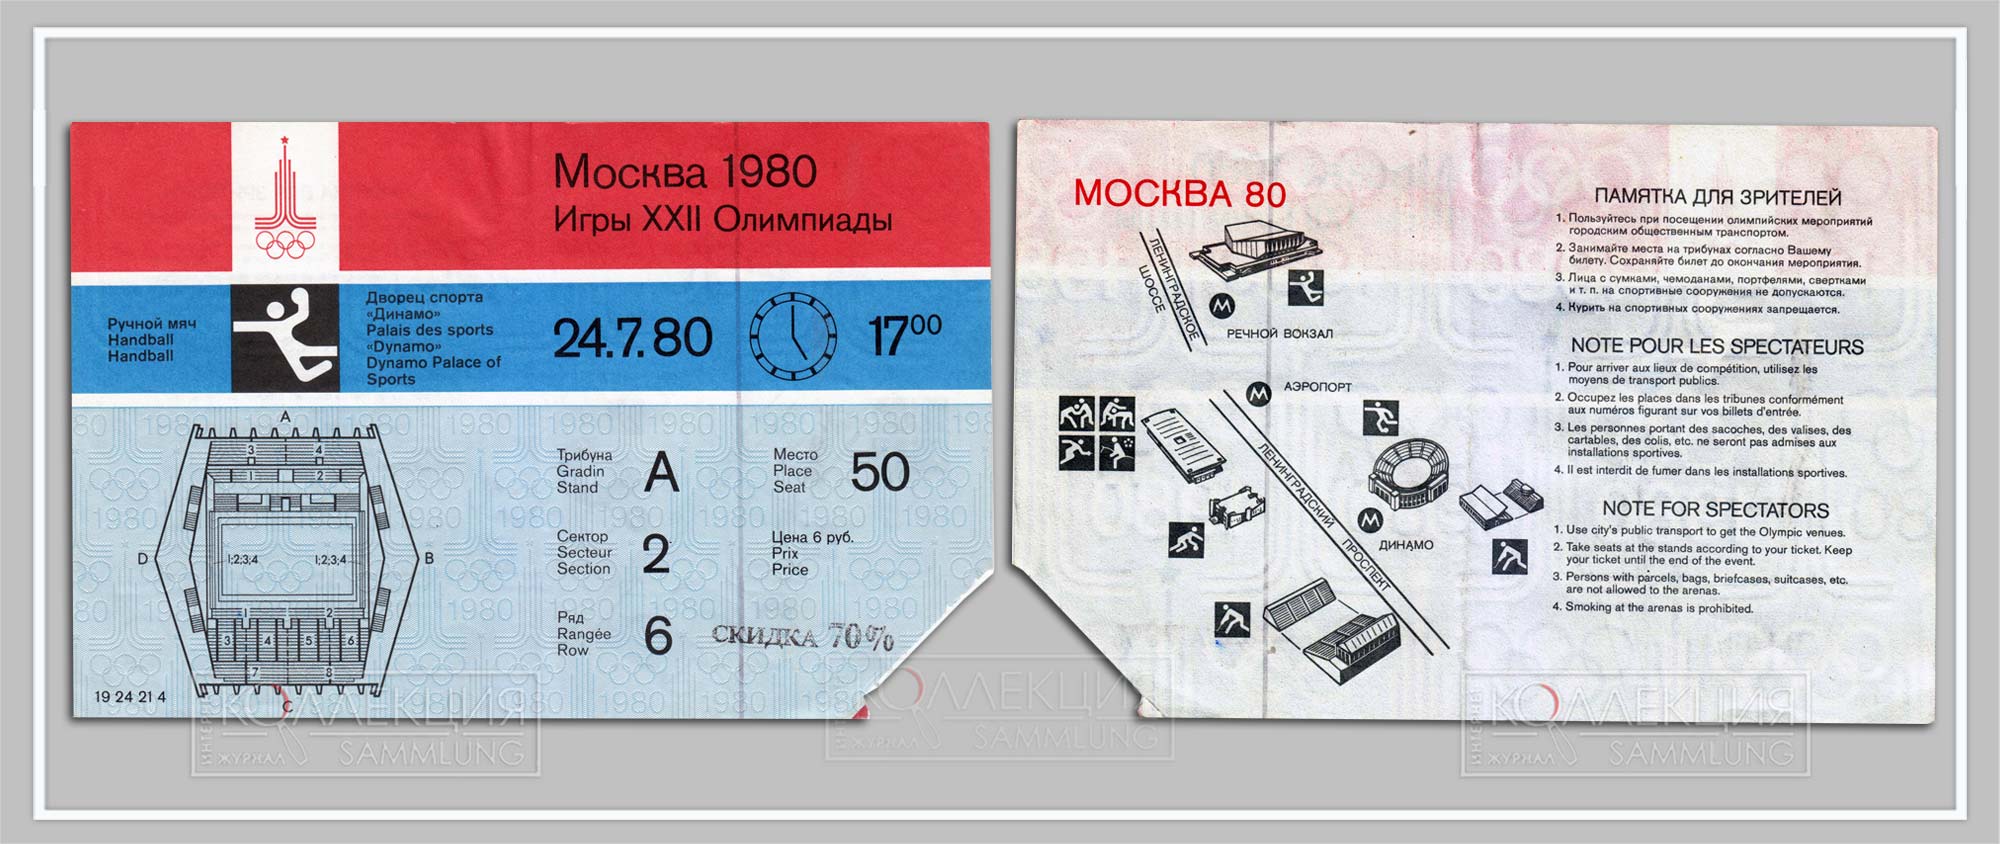 Билет московской Олимпиады-80